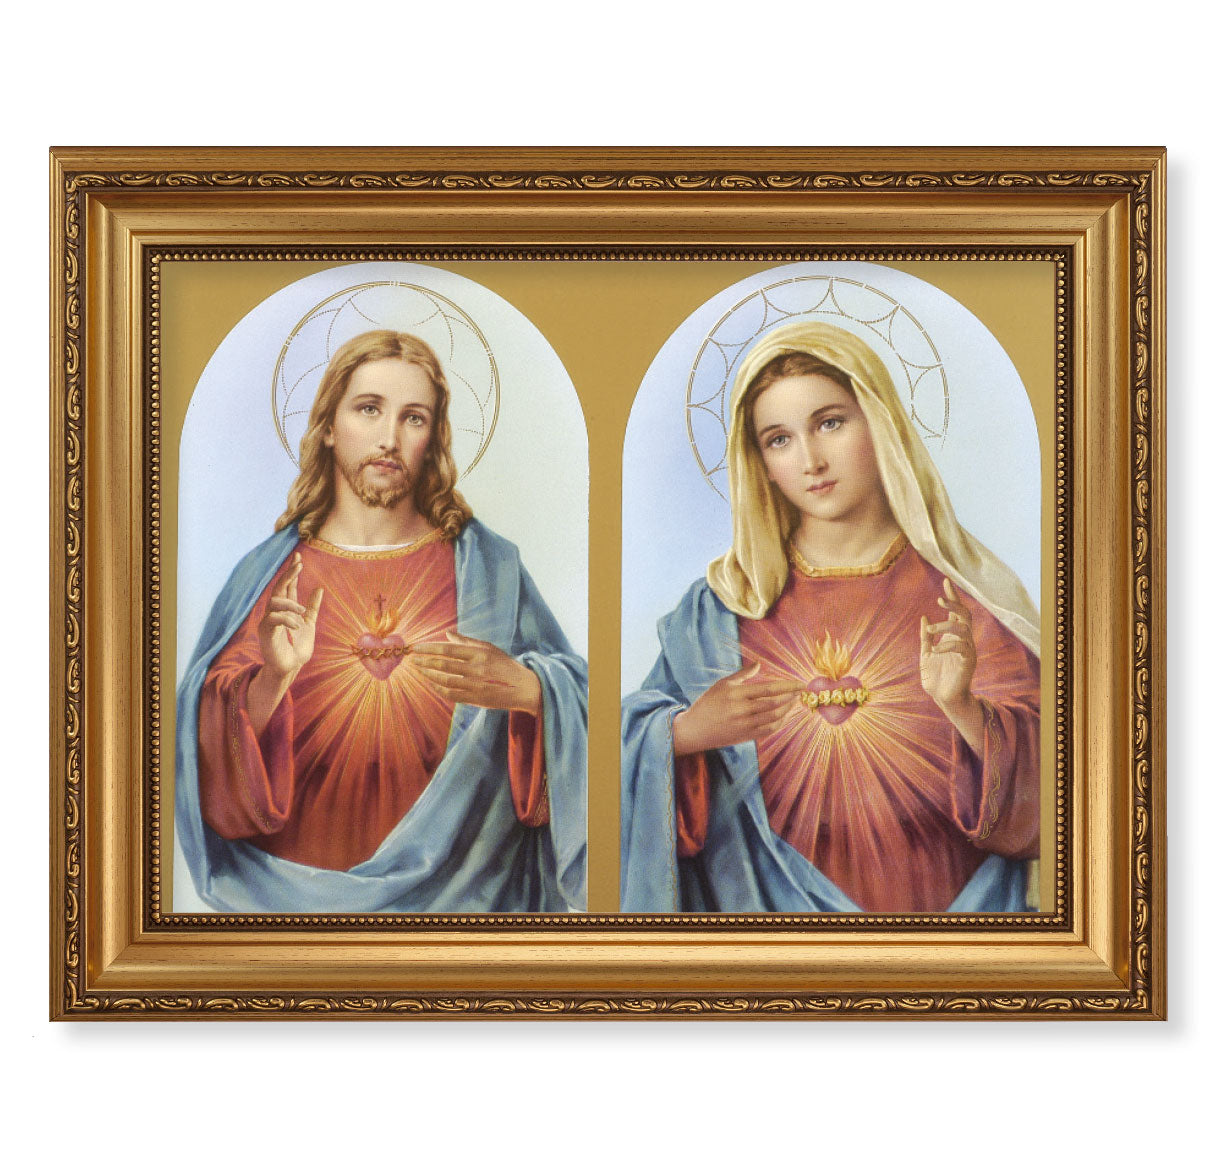 The Sacred Hearts Antique Gold Framed Art